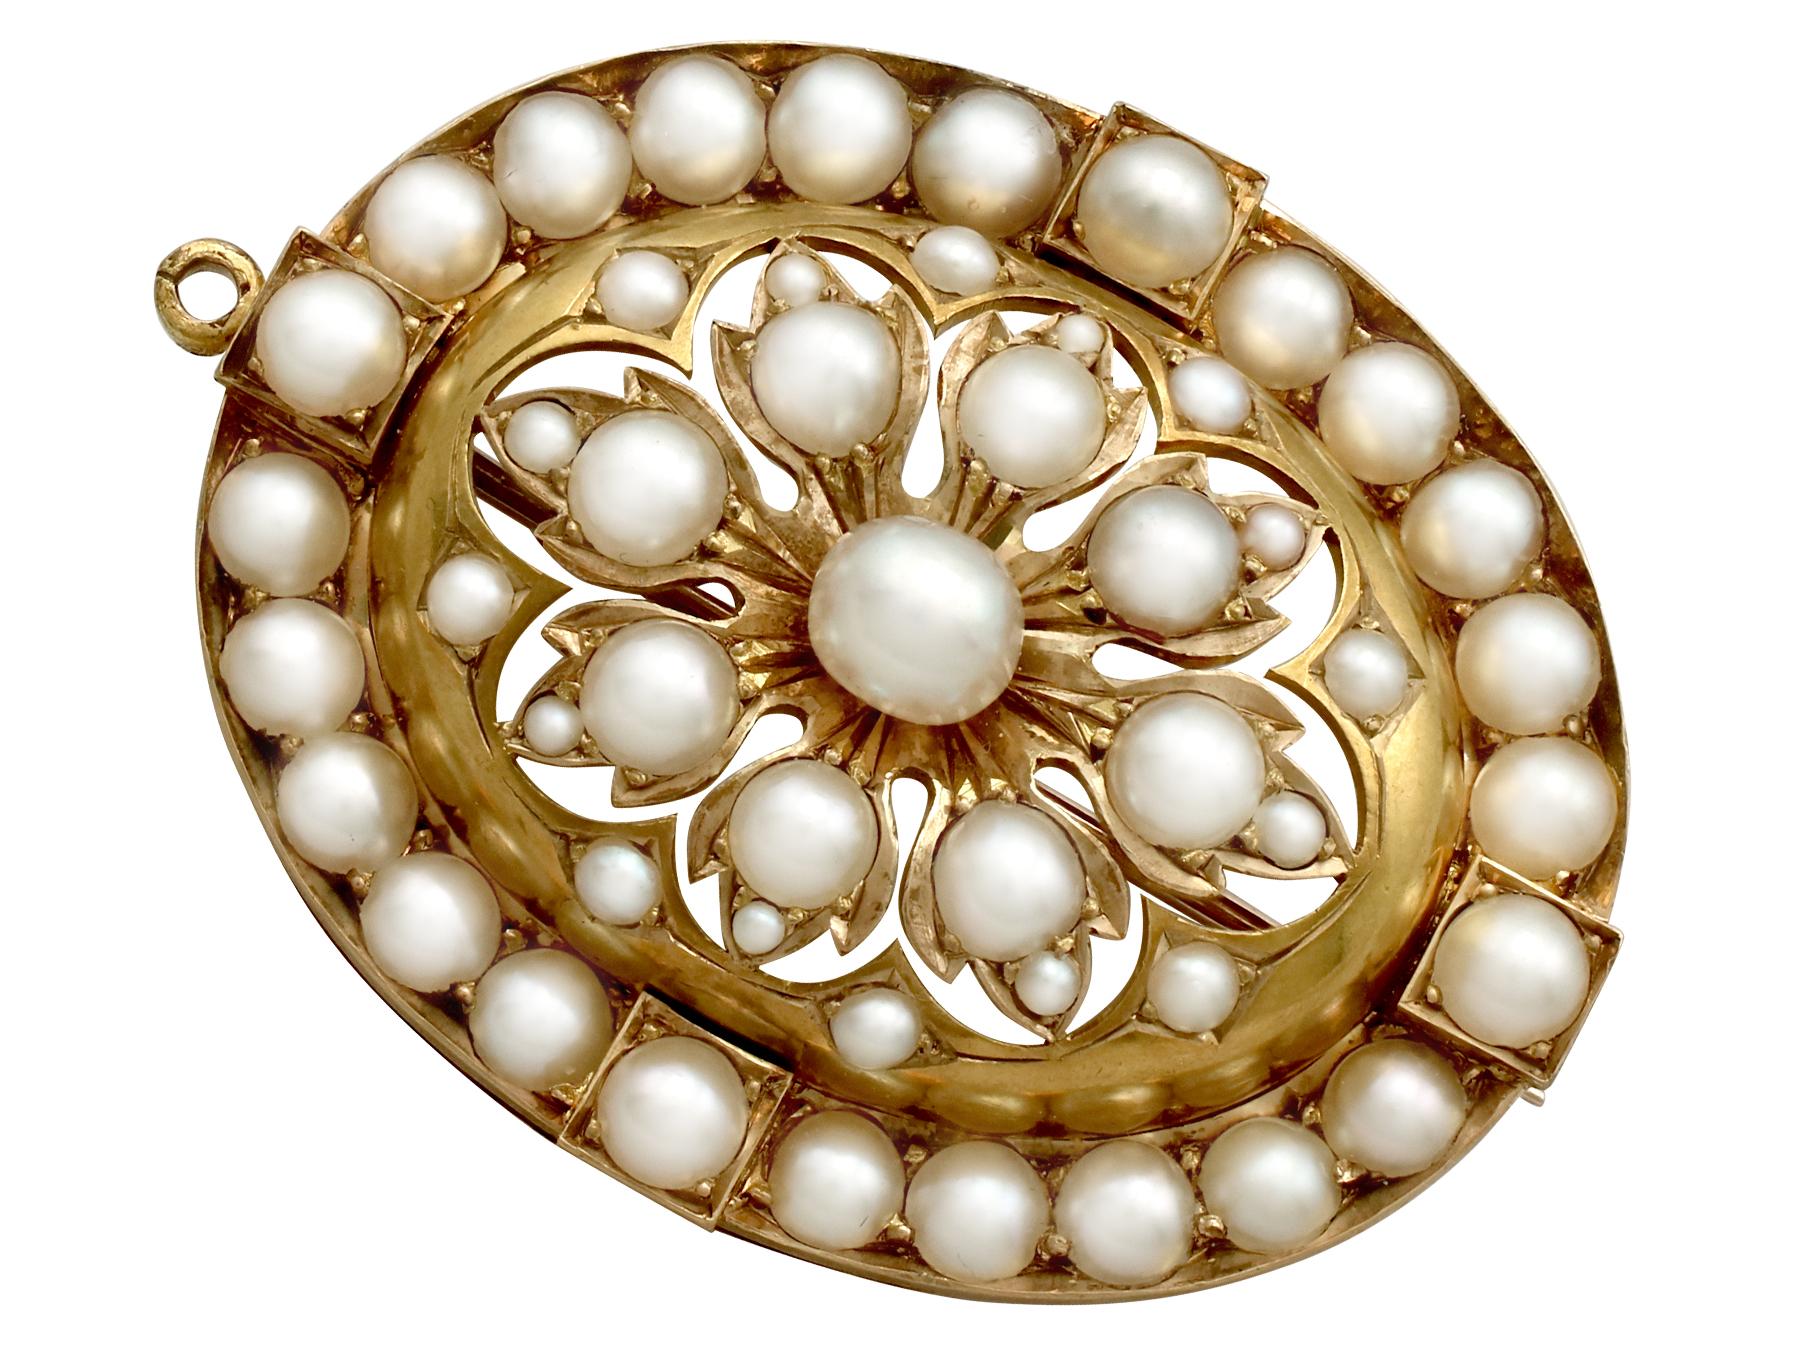 Un étonnant pendentif / broche victorien antique en perles de rocaille et or jaune 18 carats avec une chaîne en or 9 carats ; une partie de nos collections de bijoux victoriens.

Ce superbe pendentif victorien, fin et impressionnant, a été réalisé